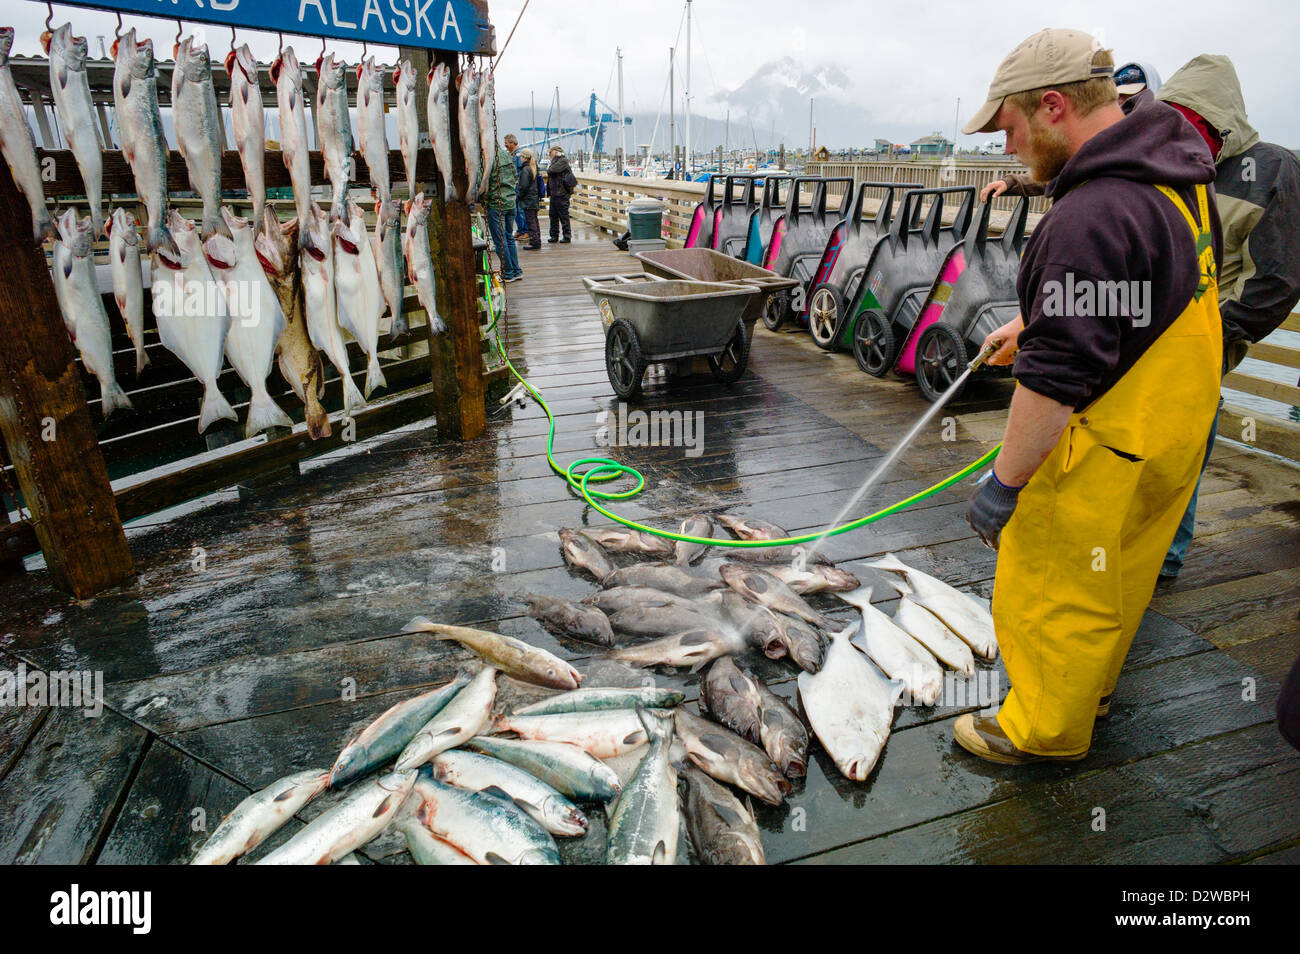 Charter Barche da pesca capitani appendere il pescato del giorno per il cliente le fotografie, Seward, Alaska, STATI UNITI D'AMERICA Foto Stock